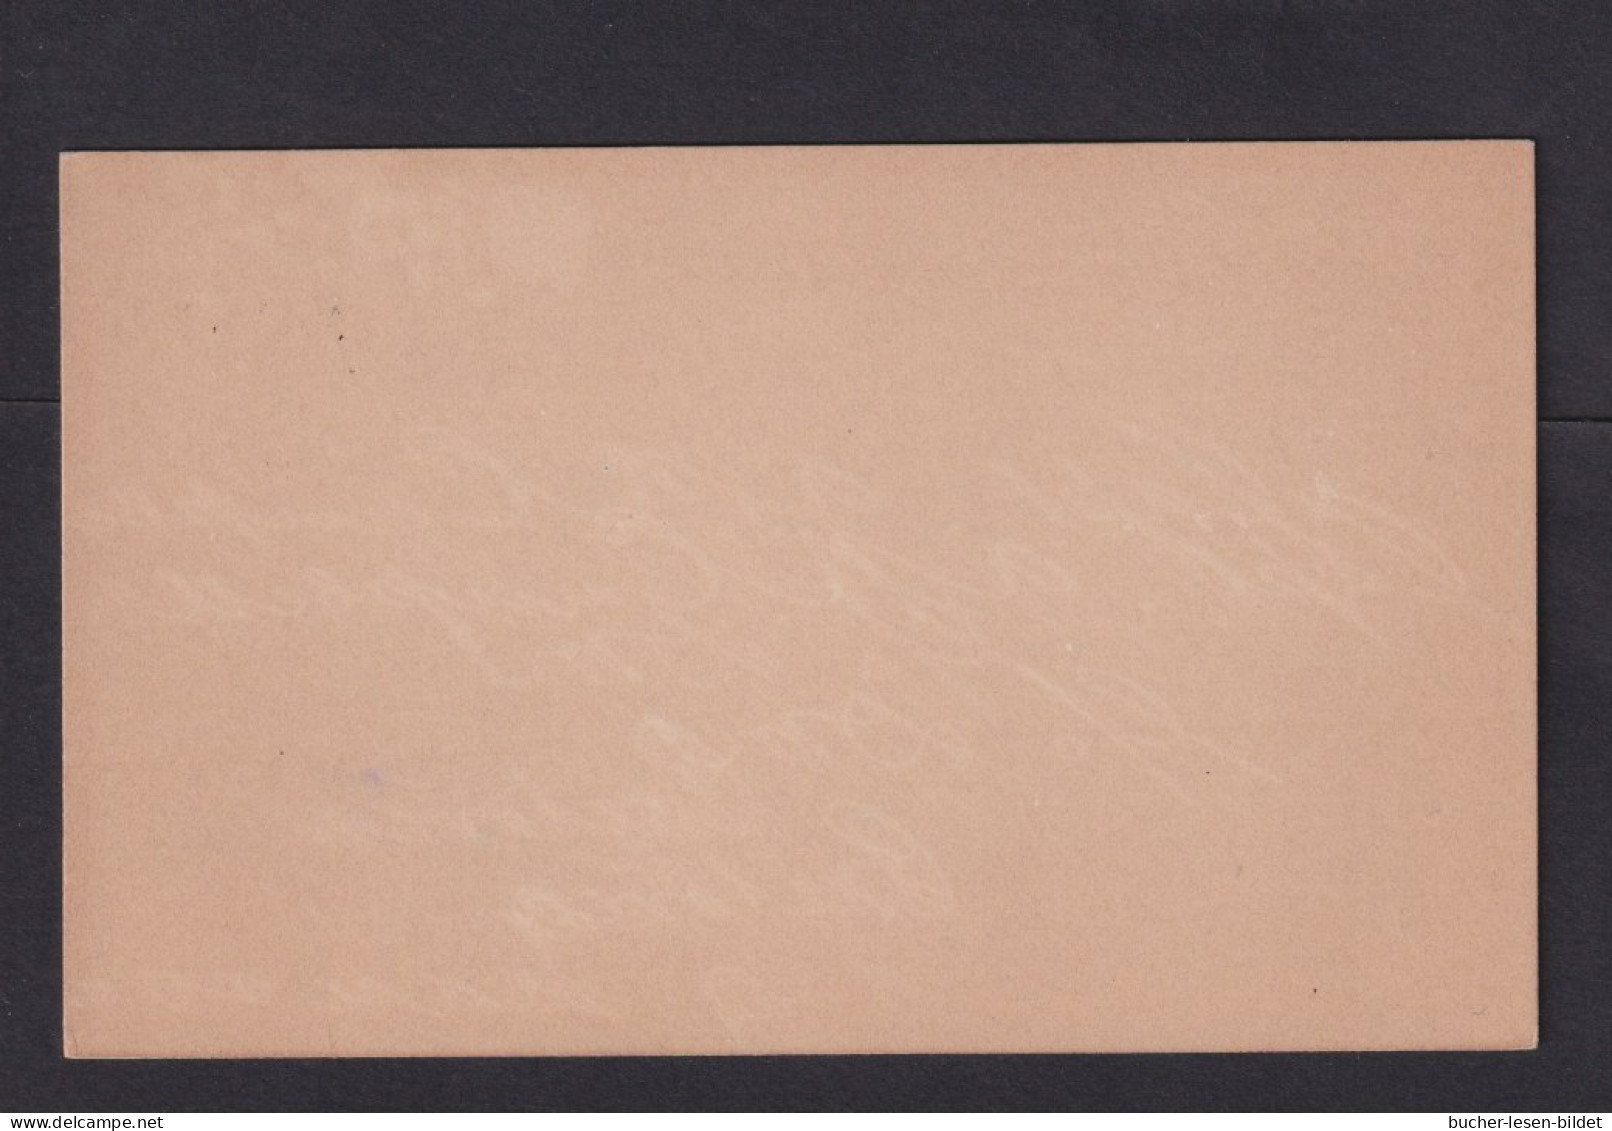 1 P. (klein) Überdruck-Ganzsache (P 5) - Ungebraucht - Oranje Vrijstaat (1868-1909)